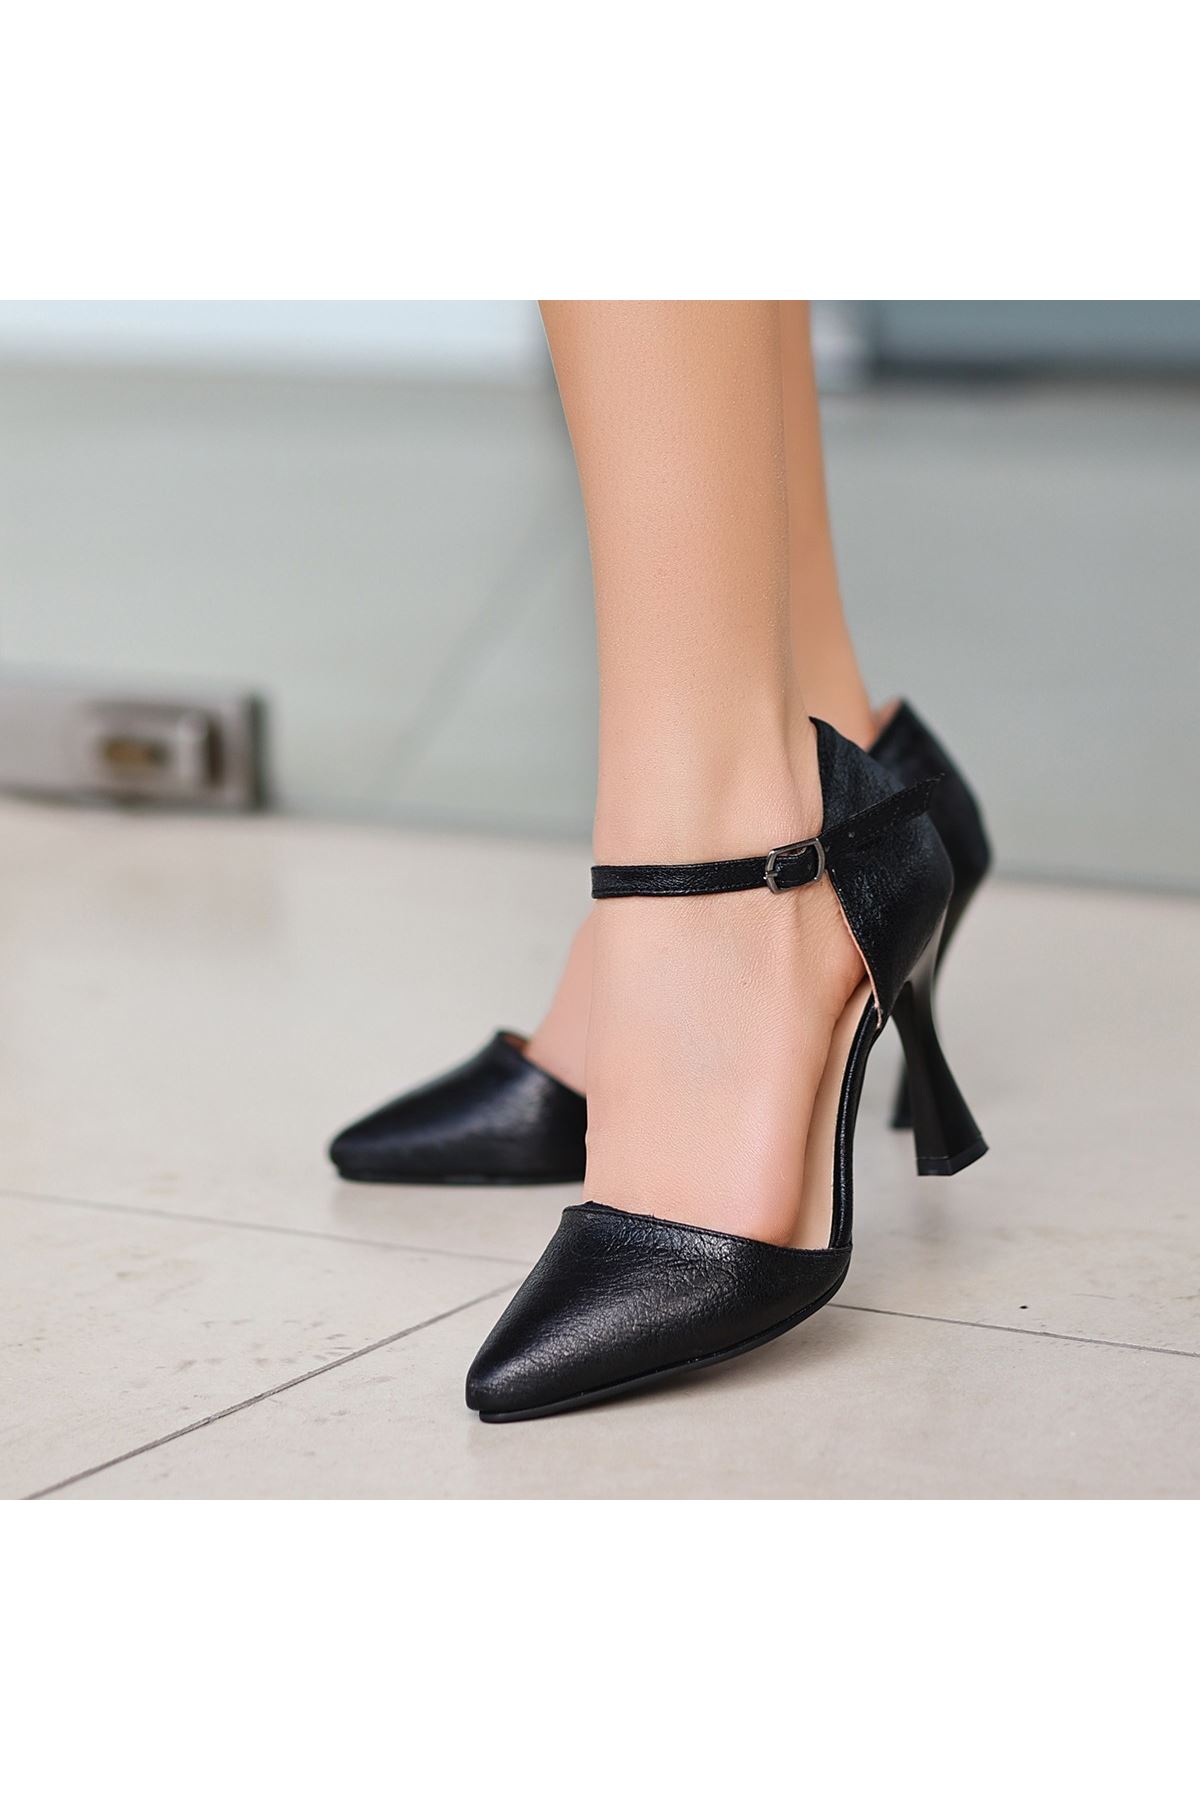 Sarly Siyah Cilt Topuklu Ayakkabı